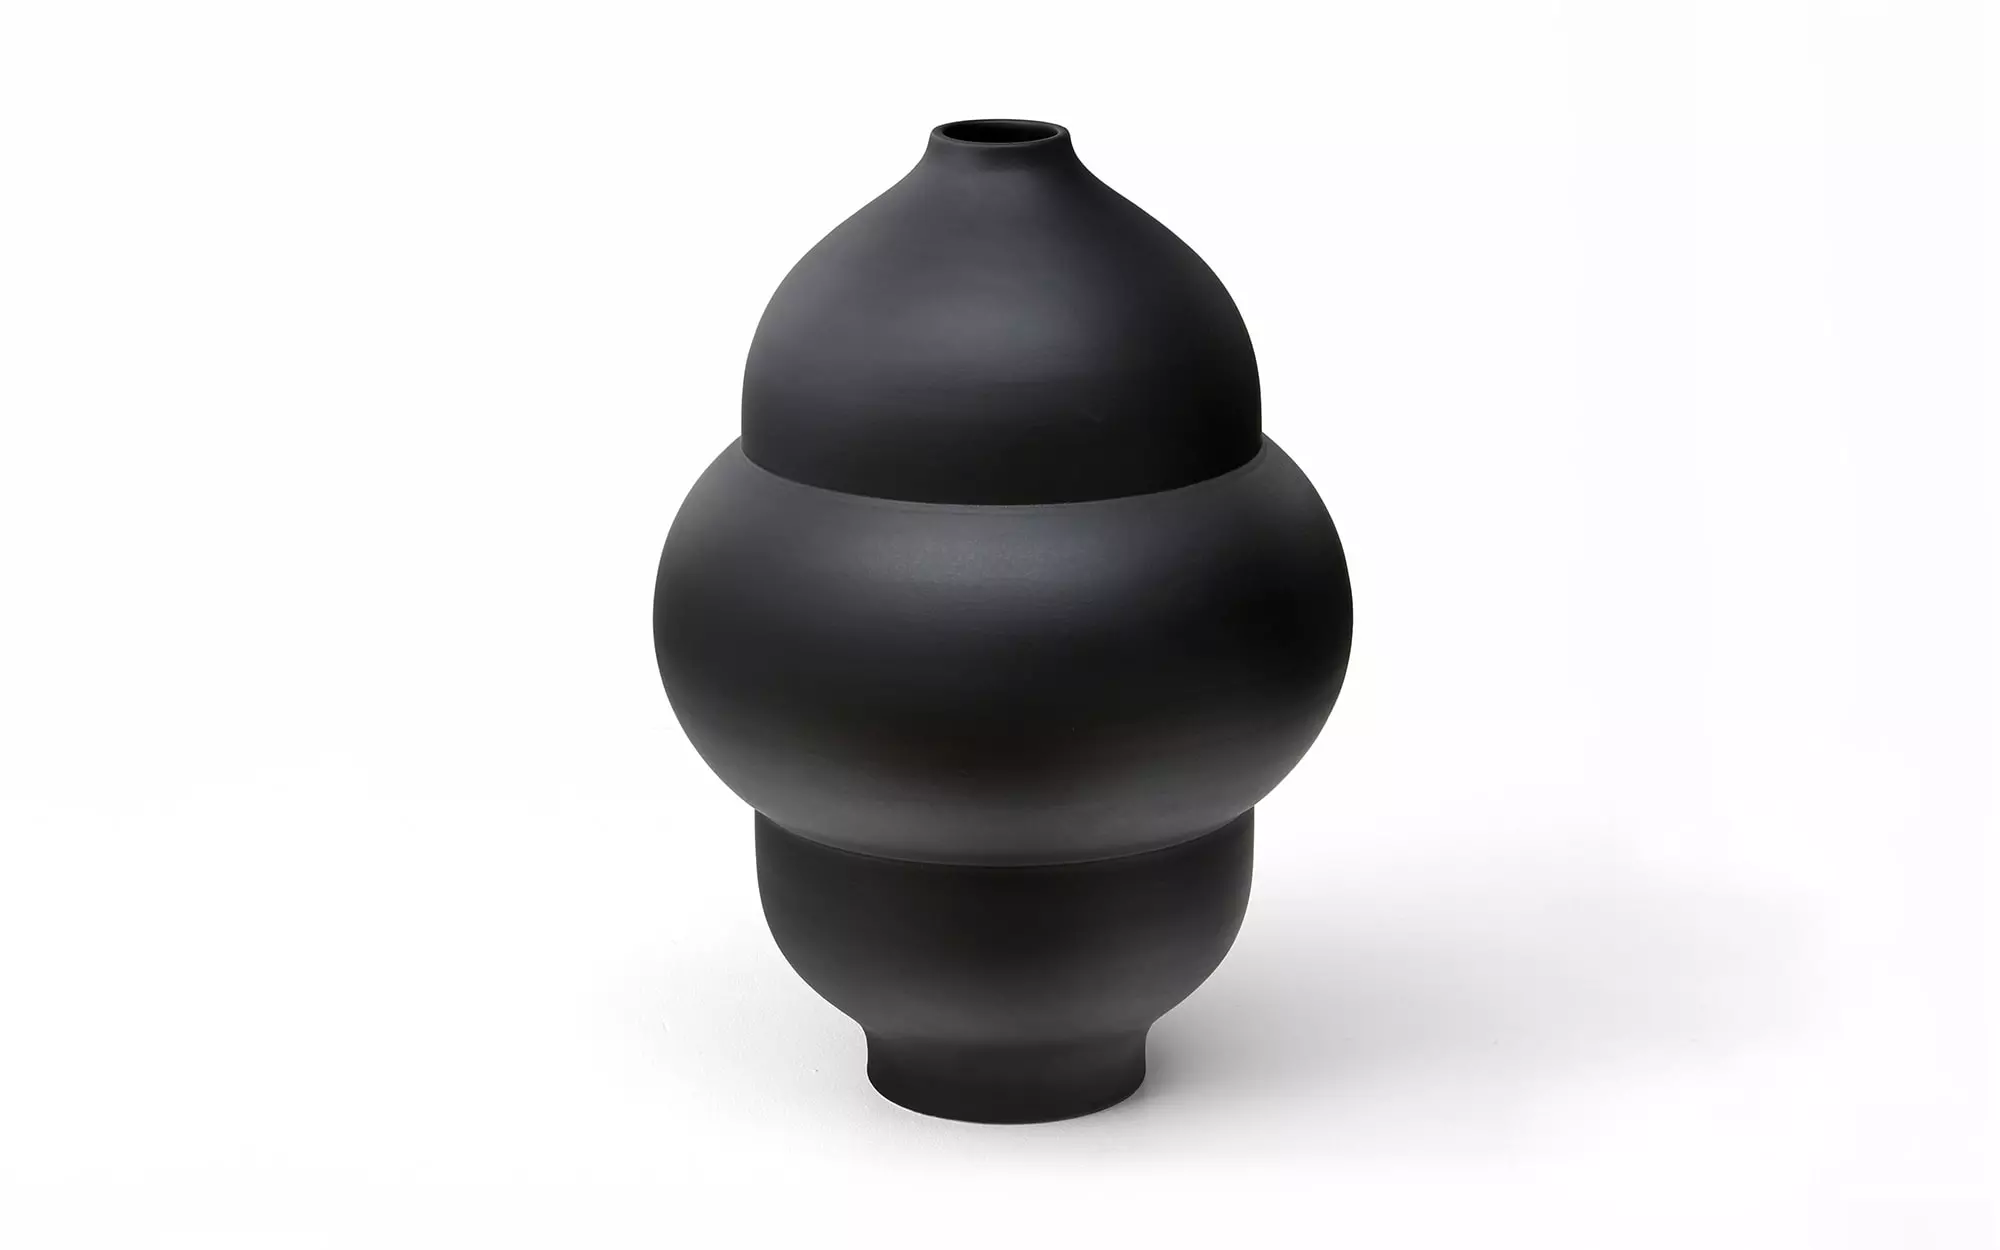 Plump - 1 Vase - Pierre Charpin - Lucas Ratton x kamel mennour x Galerie kreo x Jacques Lacoste @Saint-Tropez.